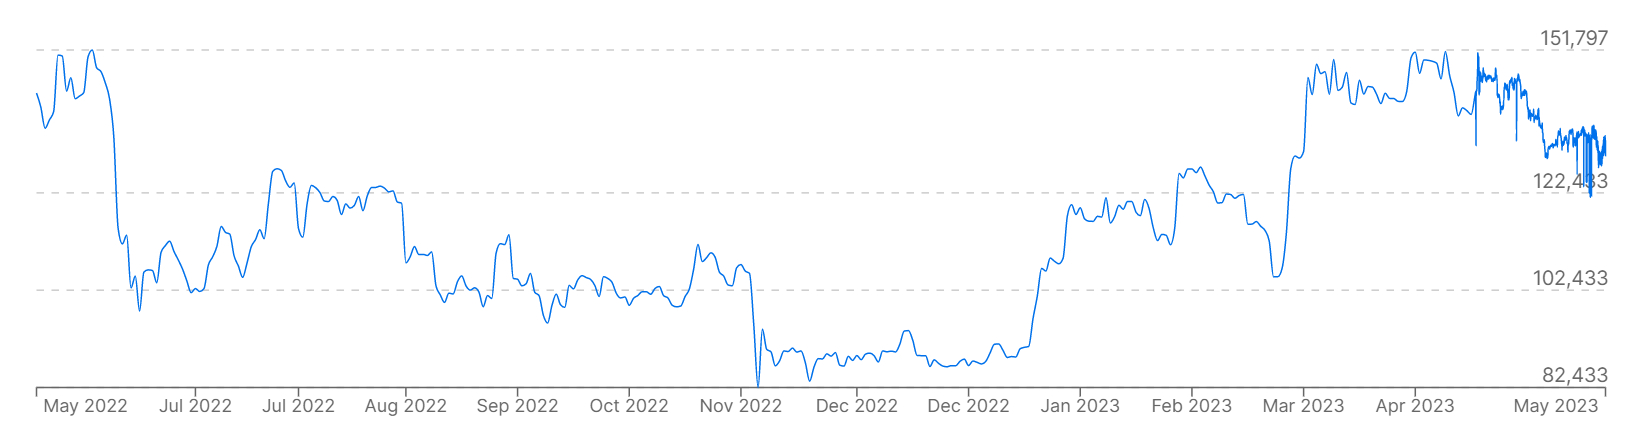 نموداری که قیمت بیت کوین را در مقابل واقعی برزیل در 12 ماه گذشته نشان می دهد.